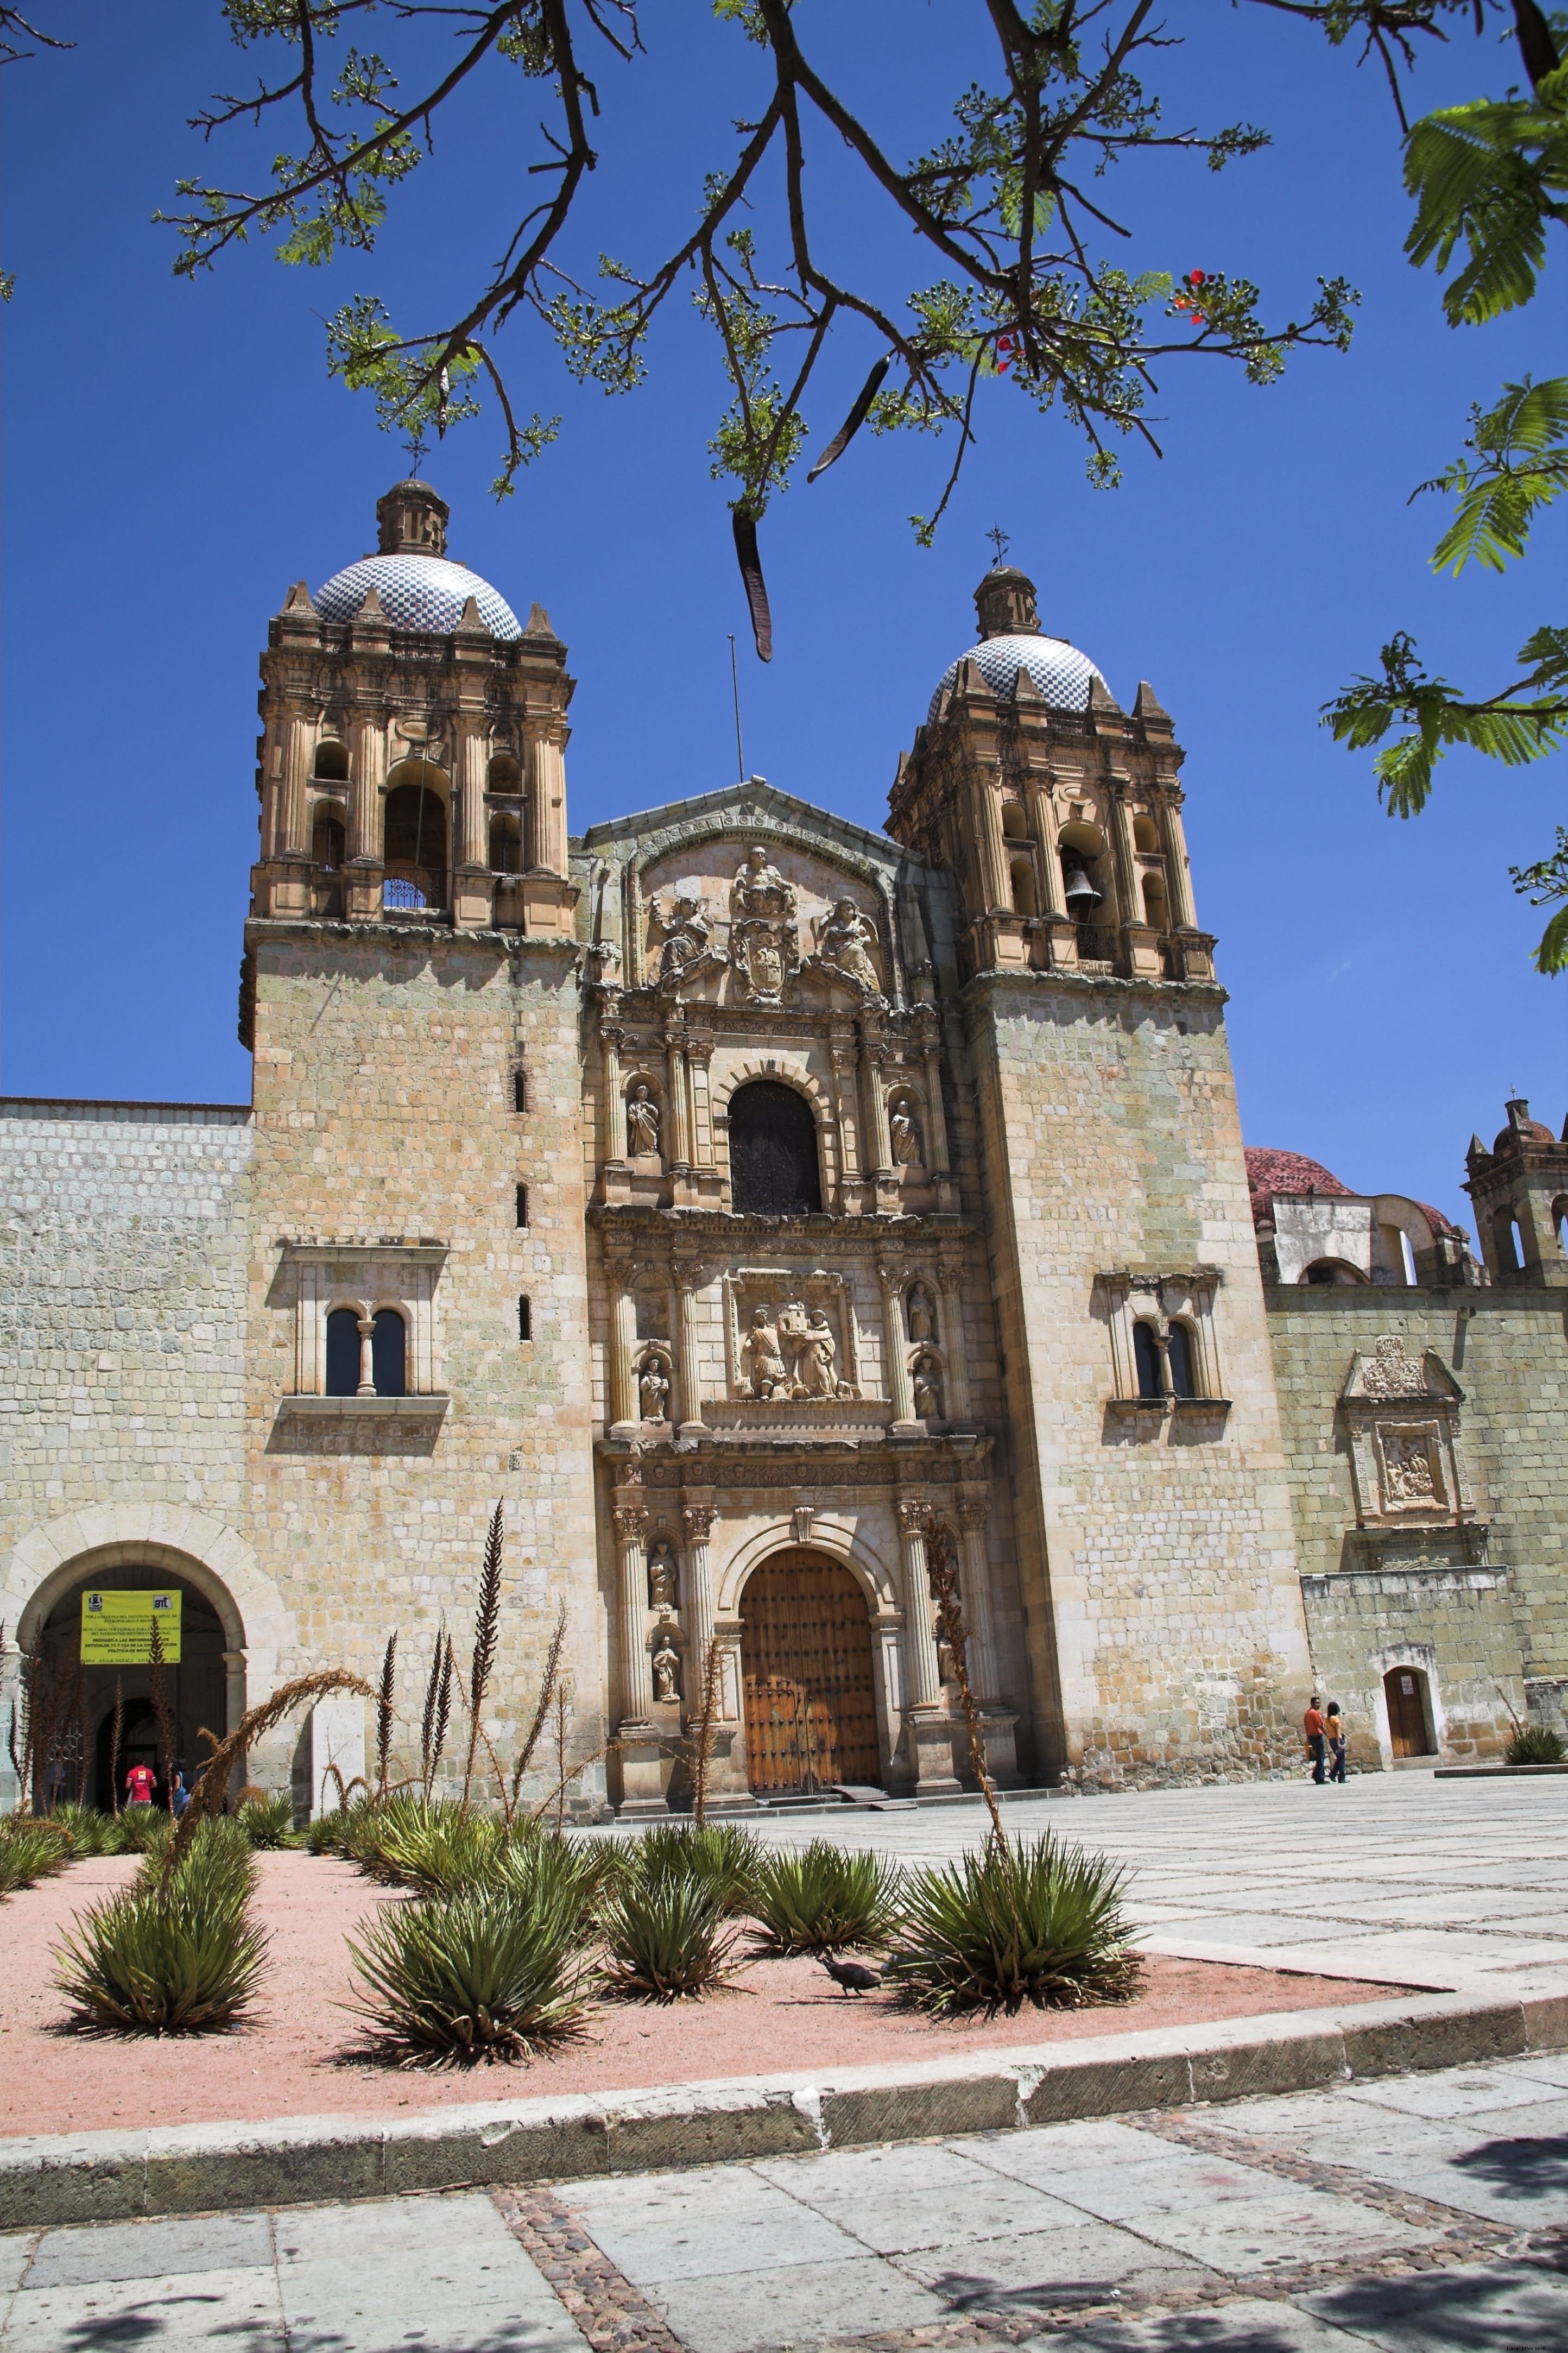 Museo de las Culturas de Oaxaca 